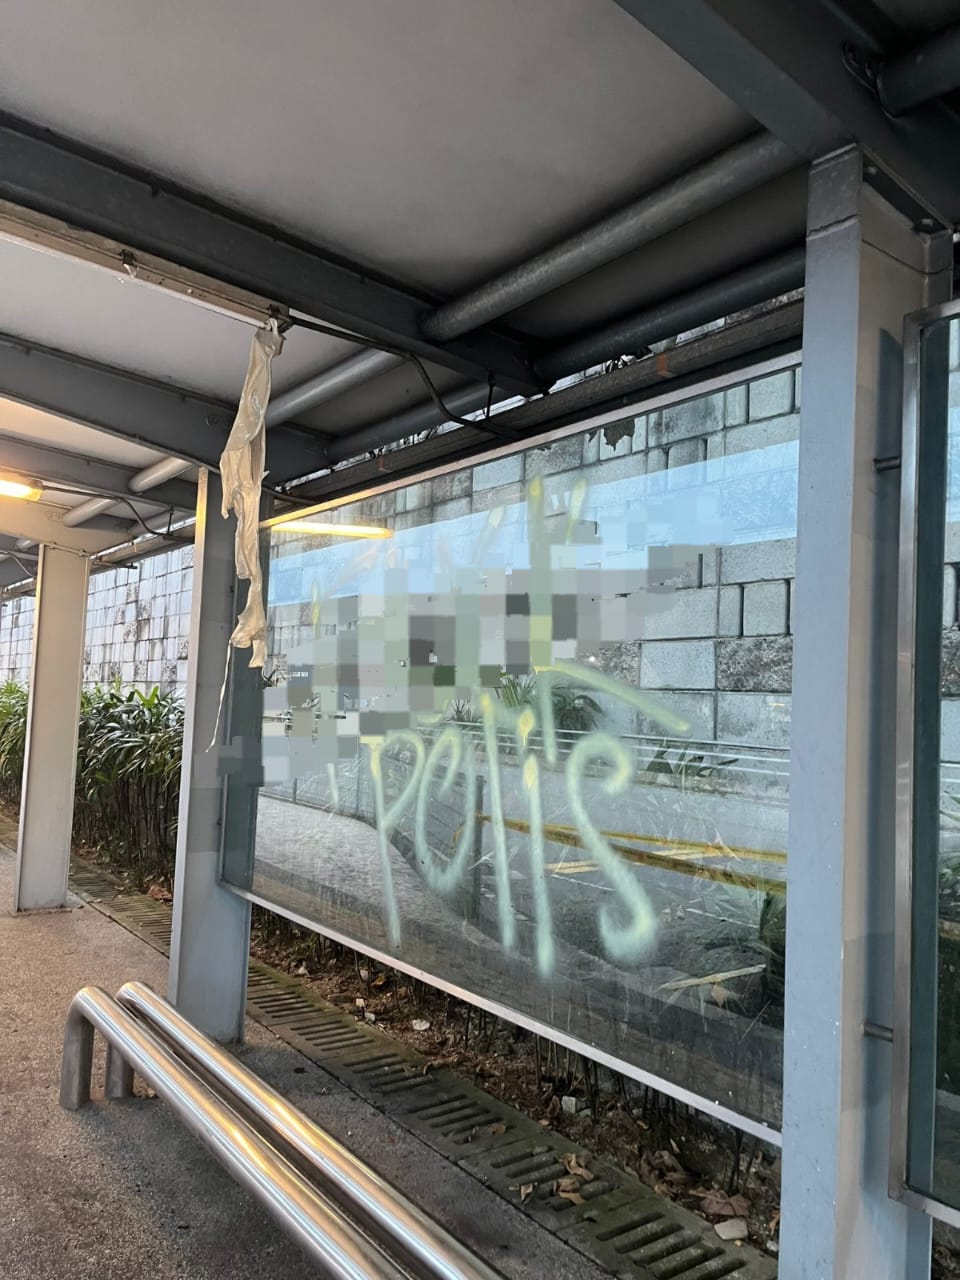 Vandalised bus stop